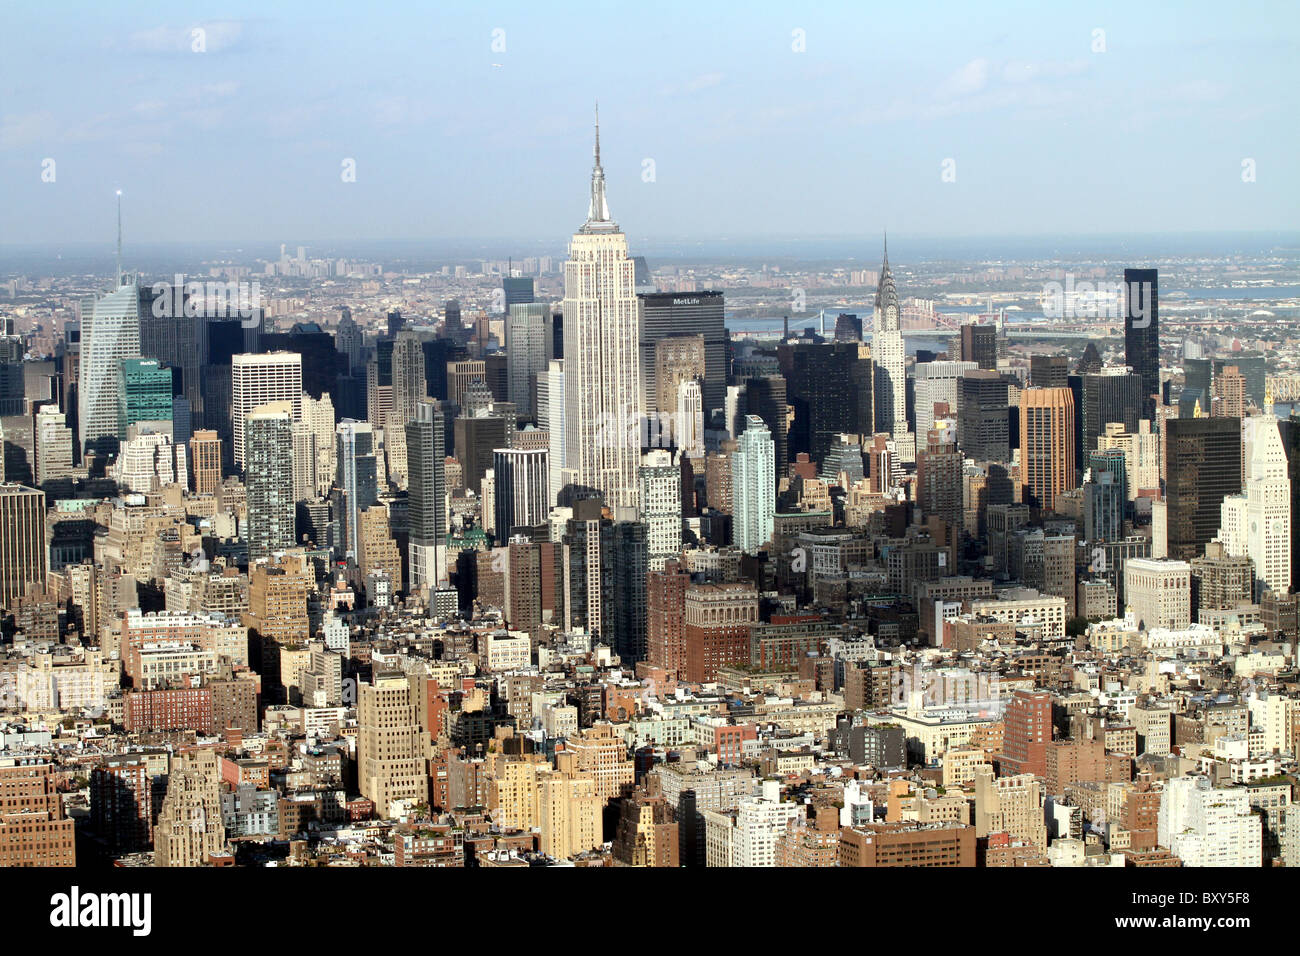 Vista aerea della città di New York skyline e midtown con l' Empire State Building a Manhattan Island, Stati Uniti d'America, America Foto Stock